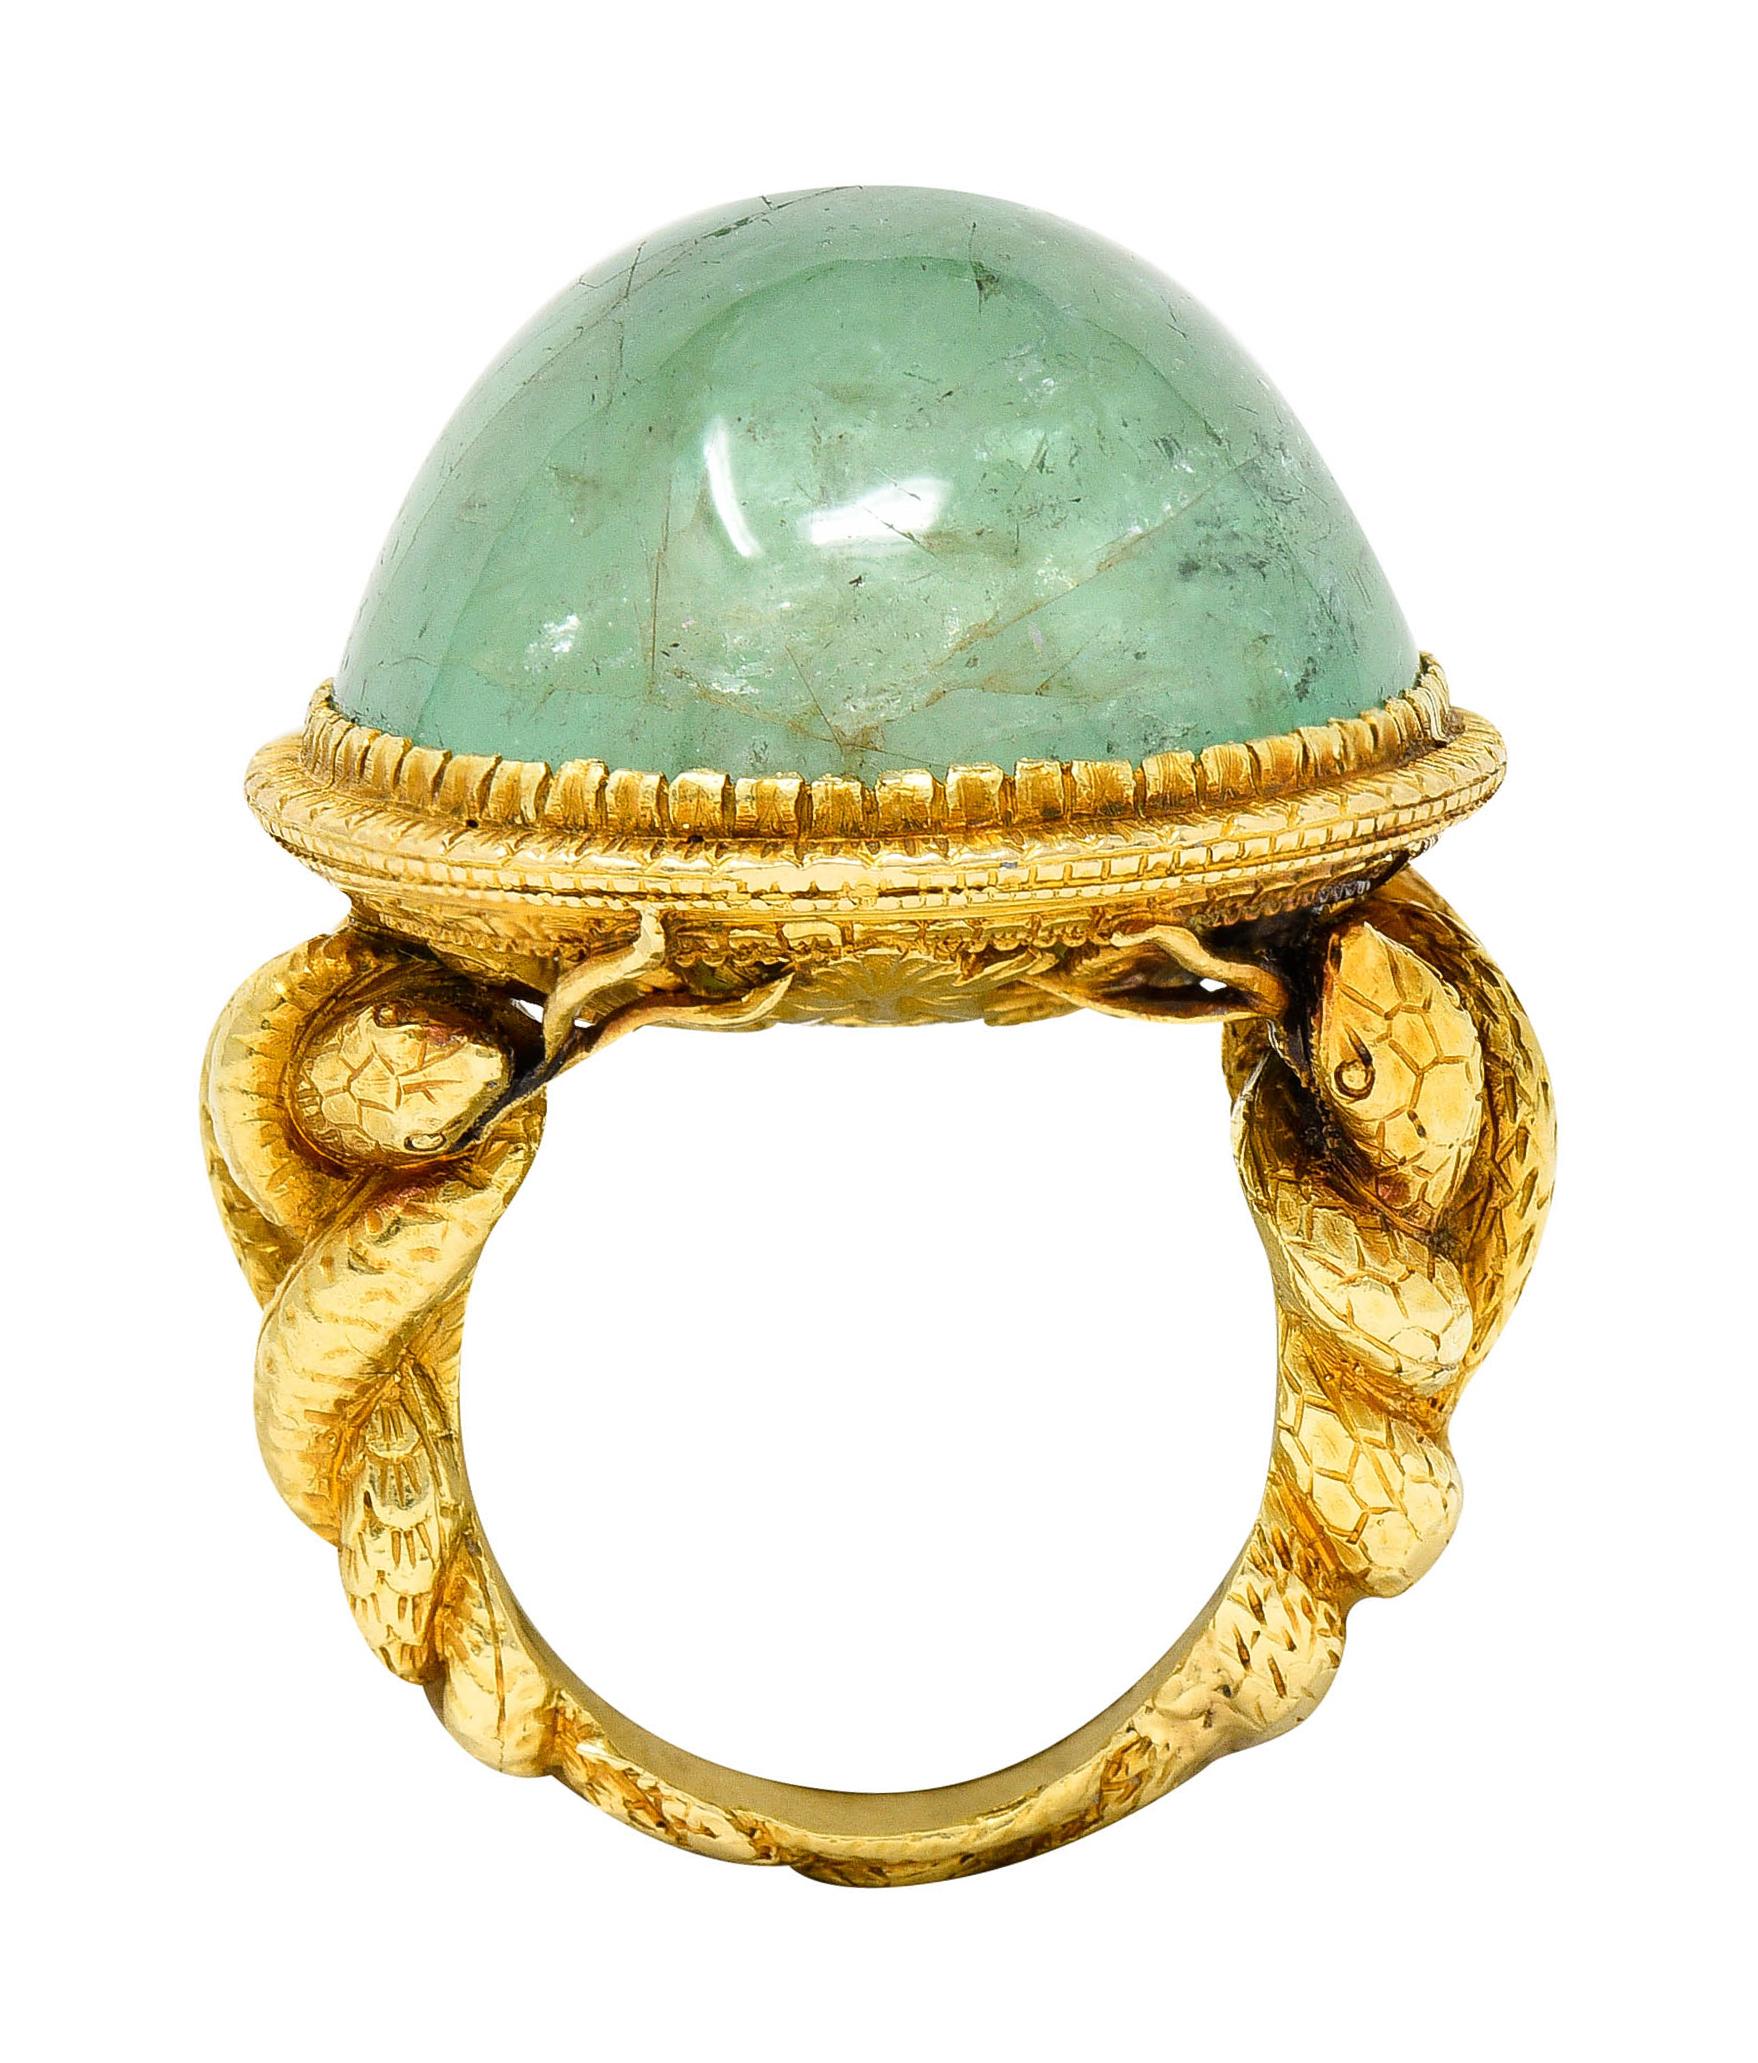 Substantial Emerald 22 Karat Gold Snake Gemstone Ring 3